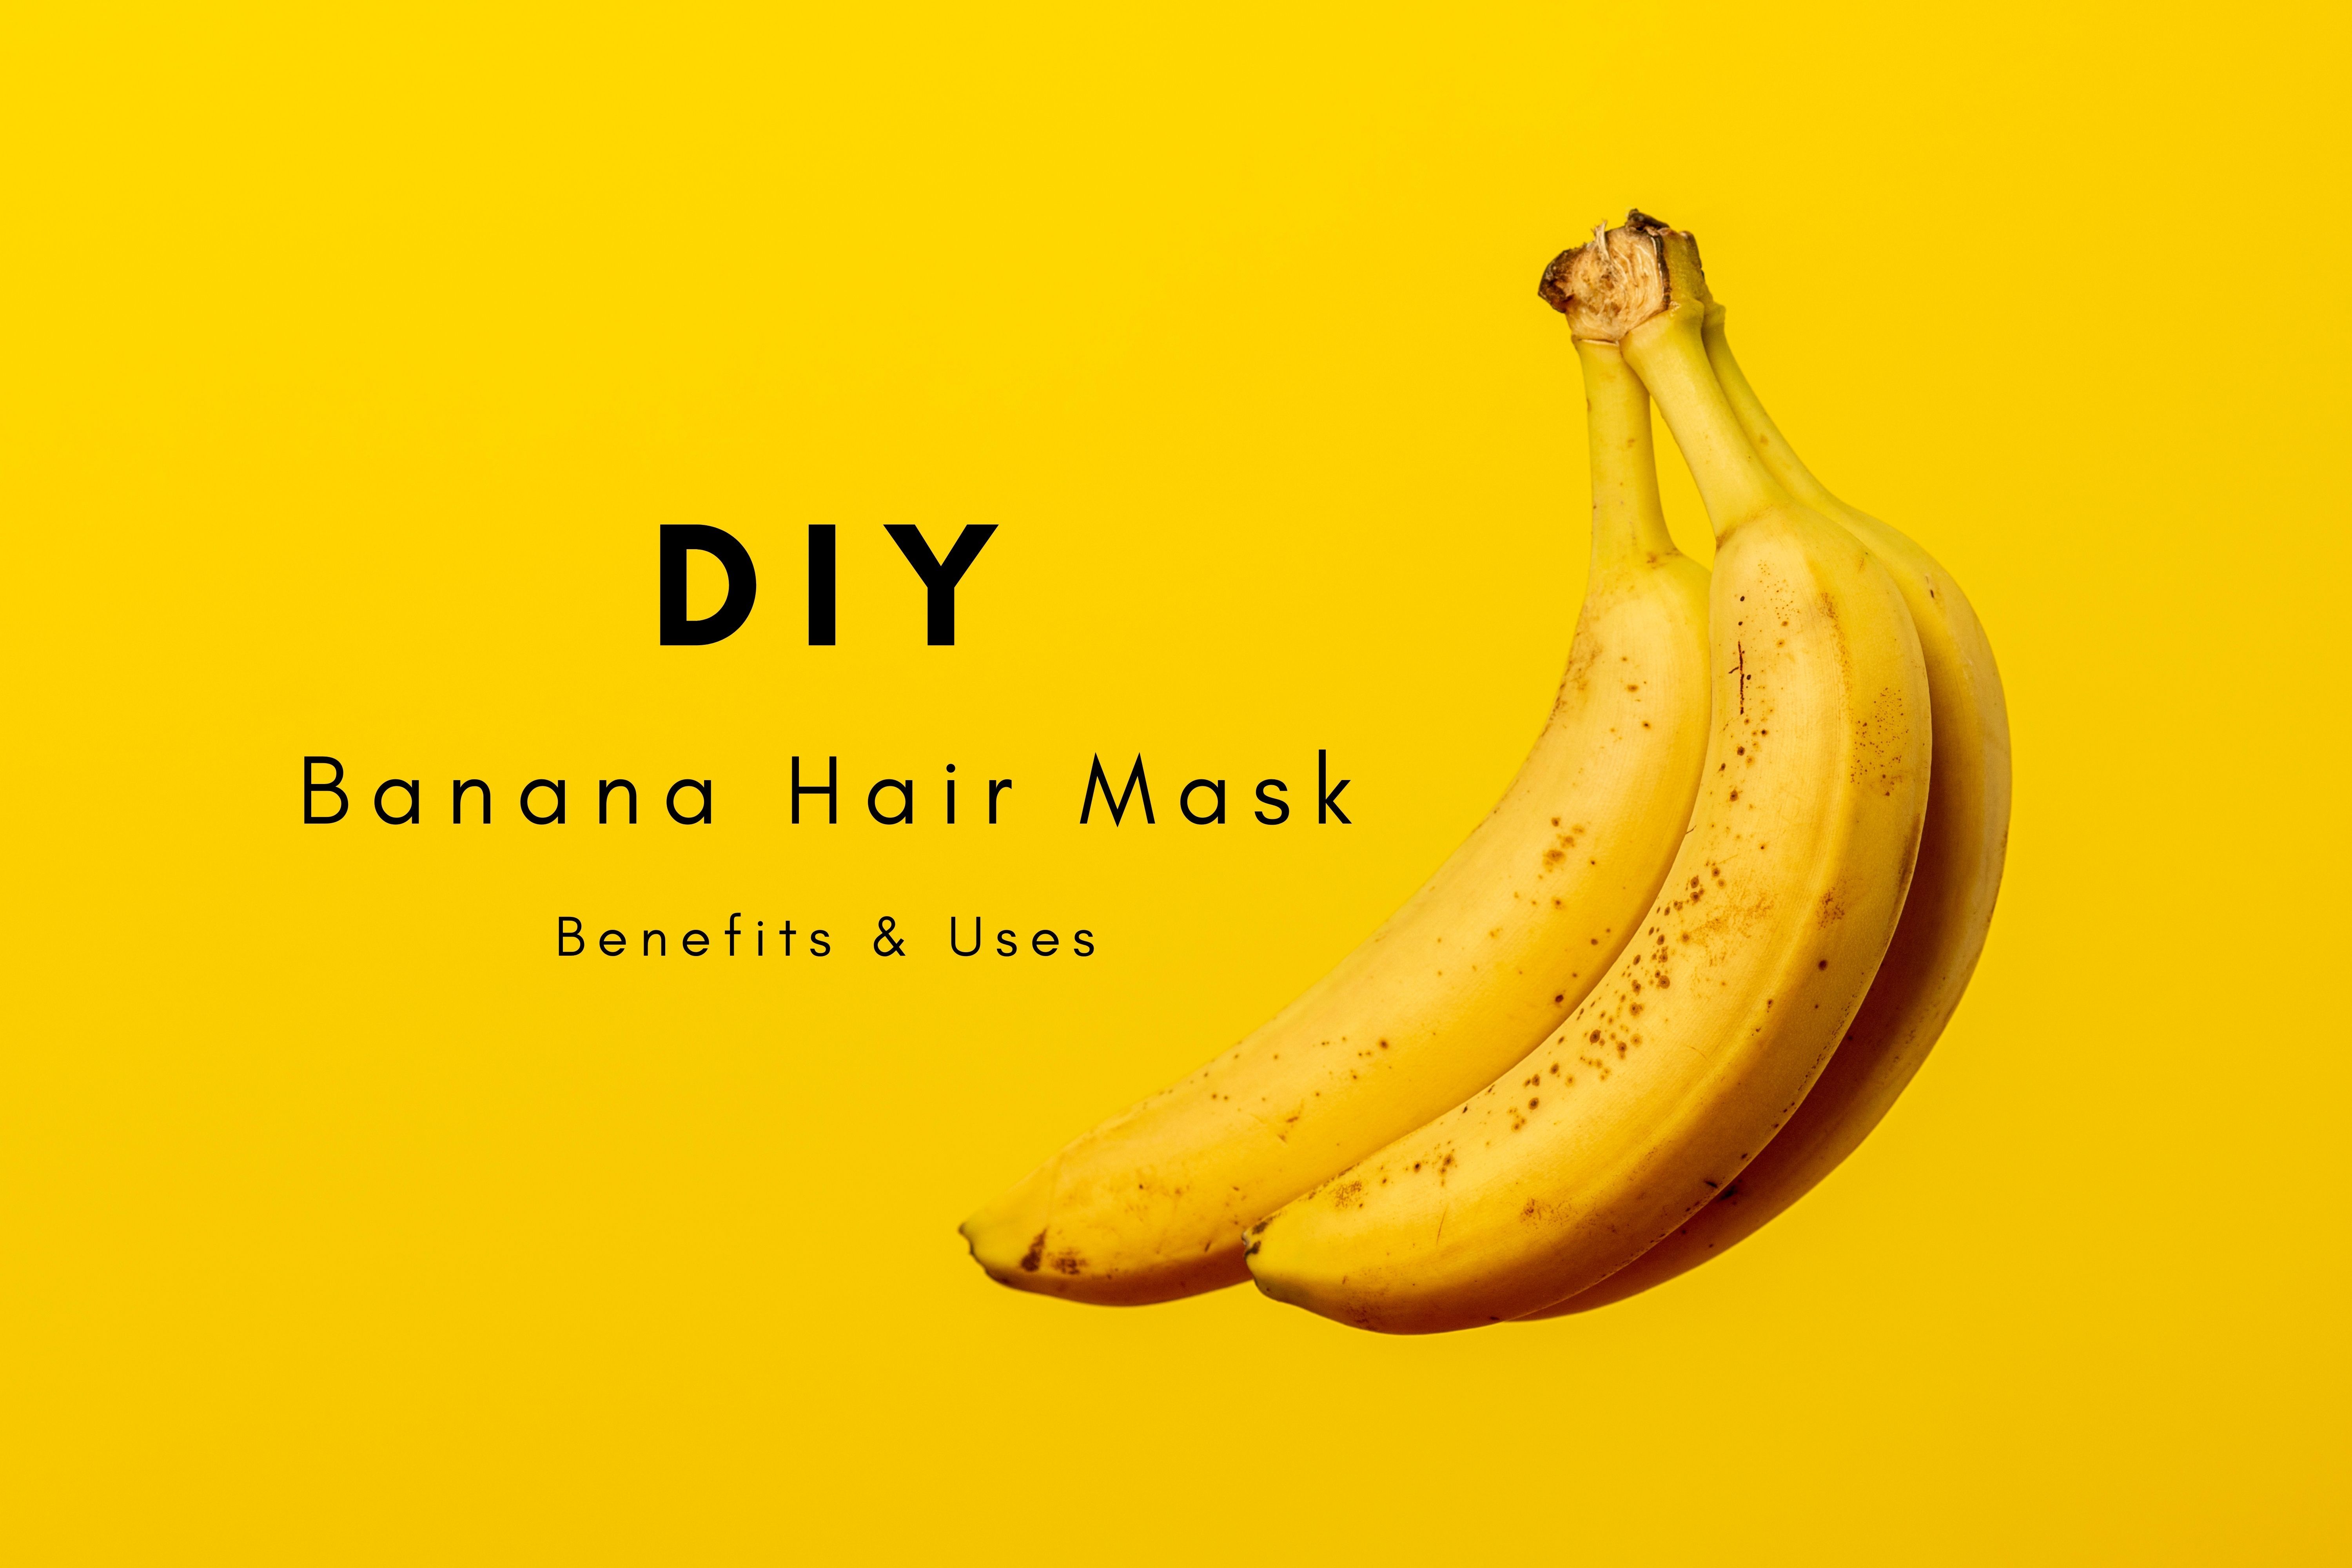 Banana Hair Mask: DIY Recipes, Benefits, and Uses